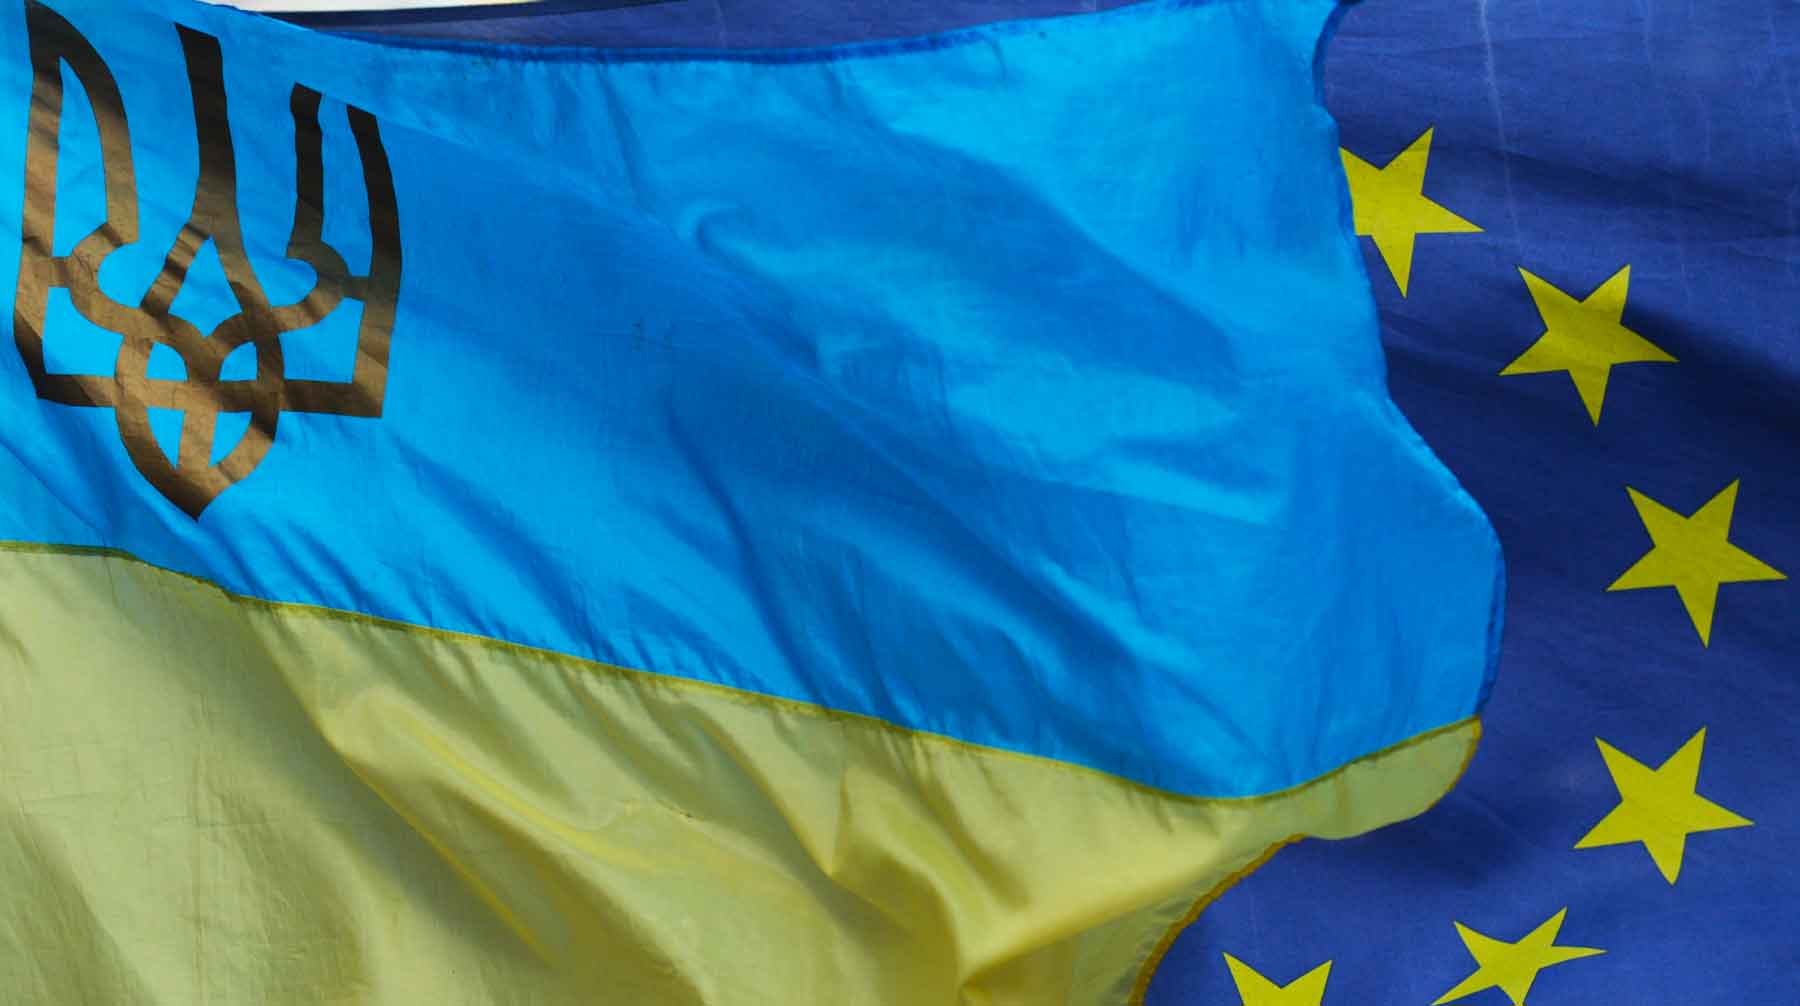 ЕС тратит на Украину значительно меньше, чем США, заявил глава Белого дома Фото: © GLOBAL LOOK press / Artur Widak